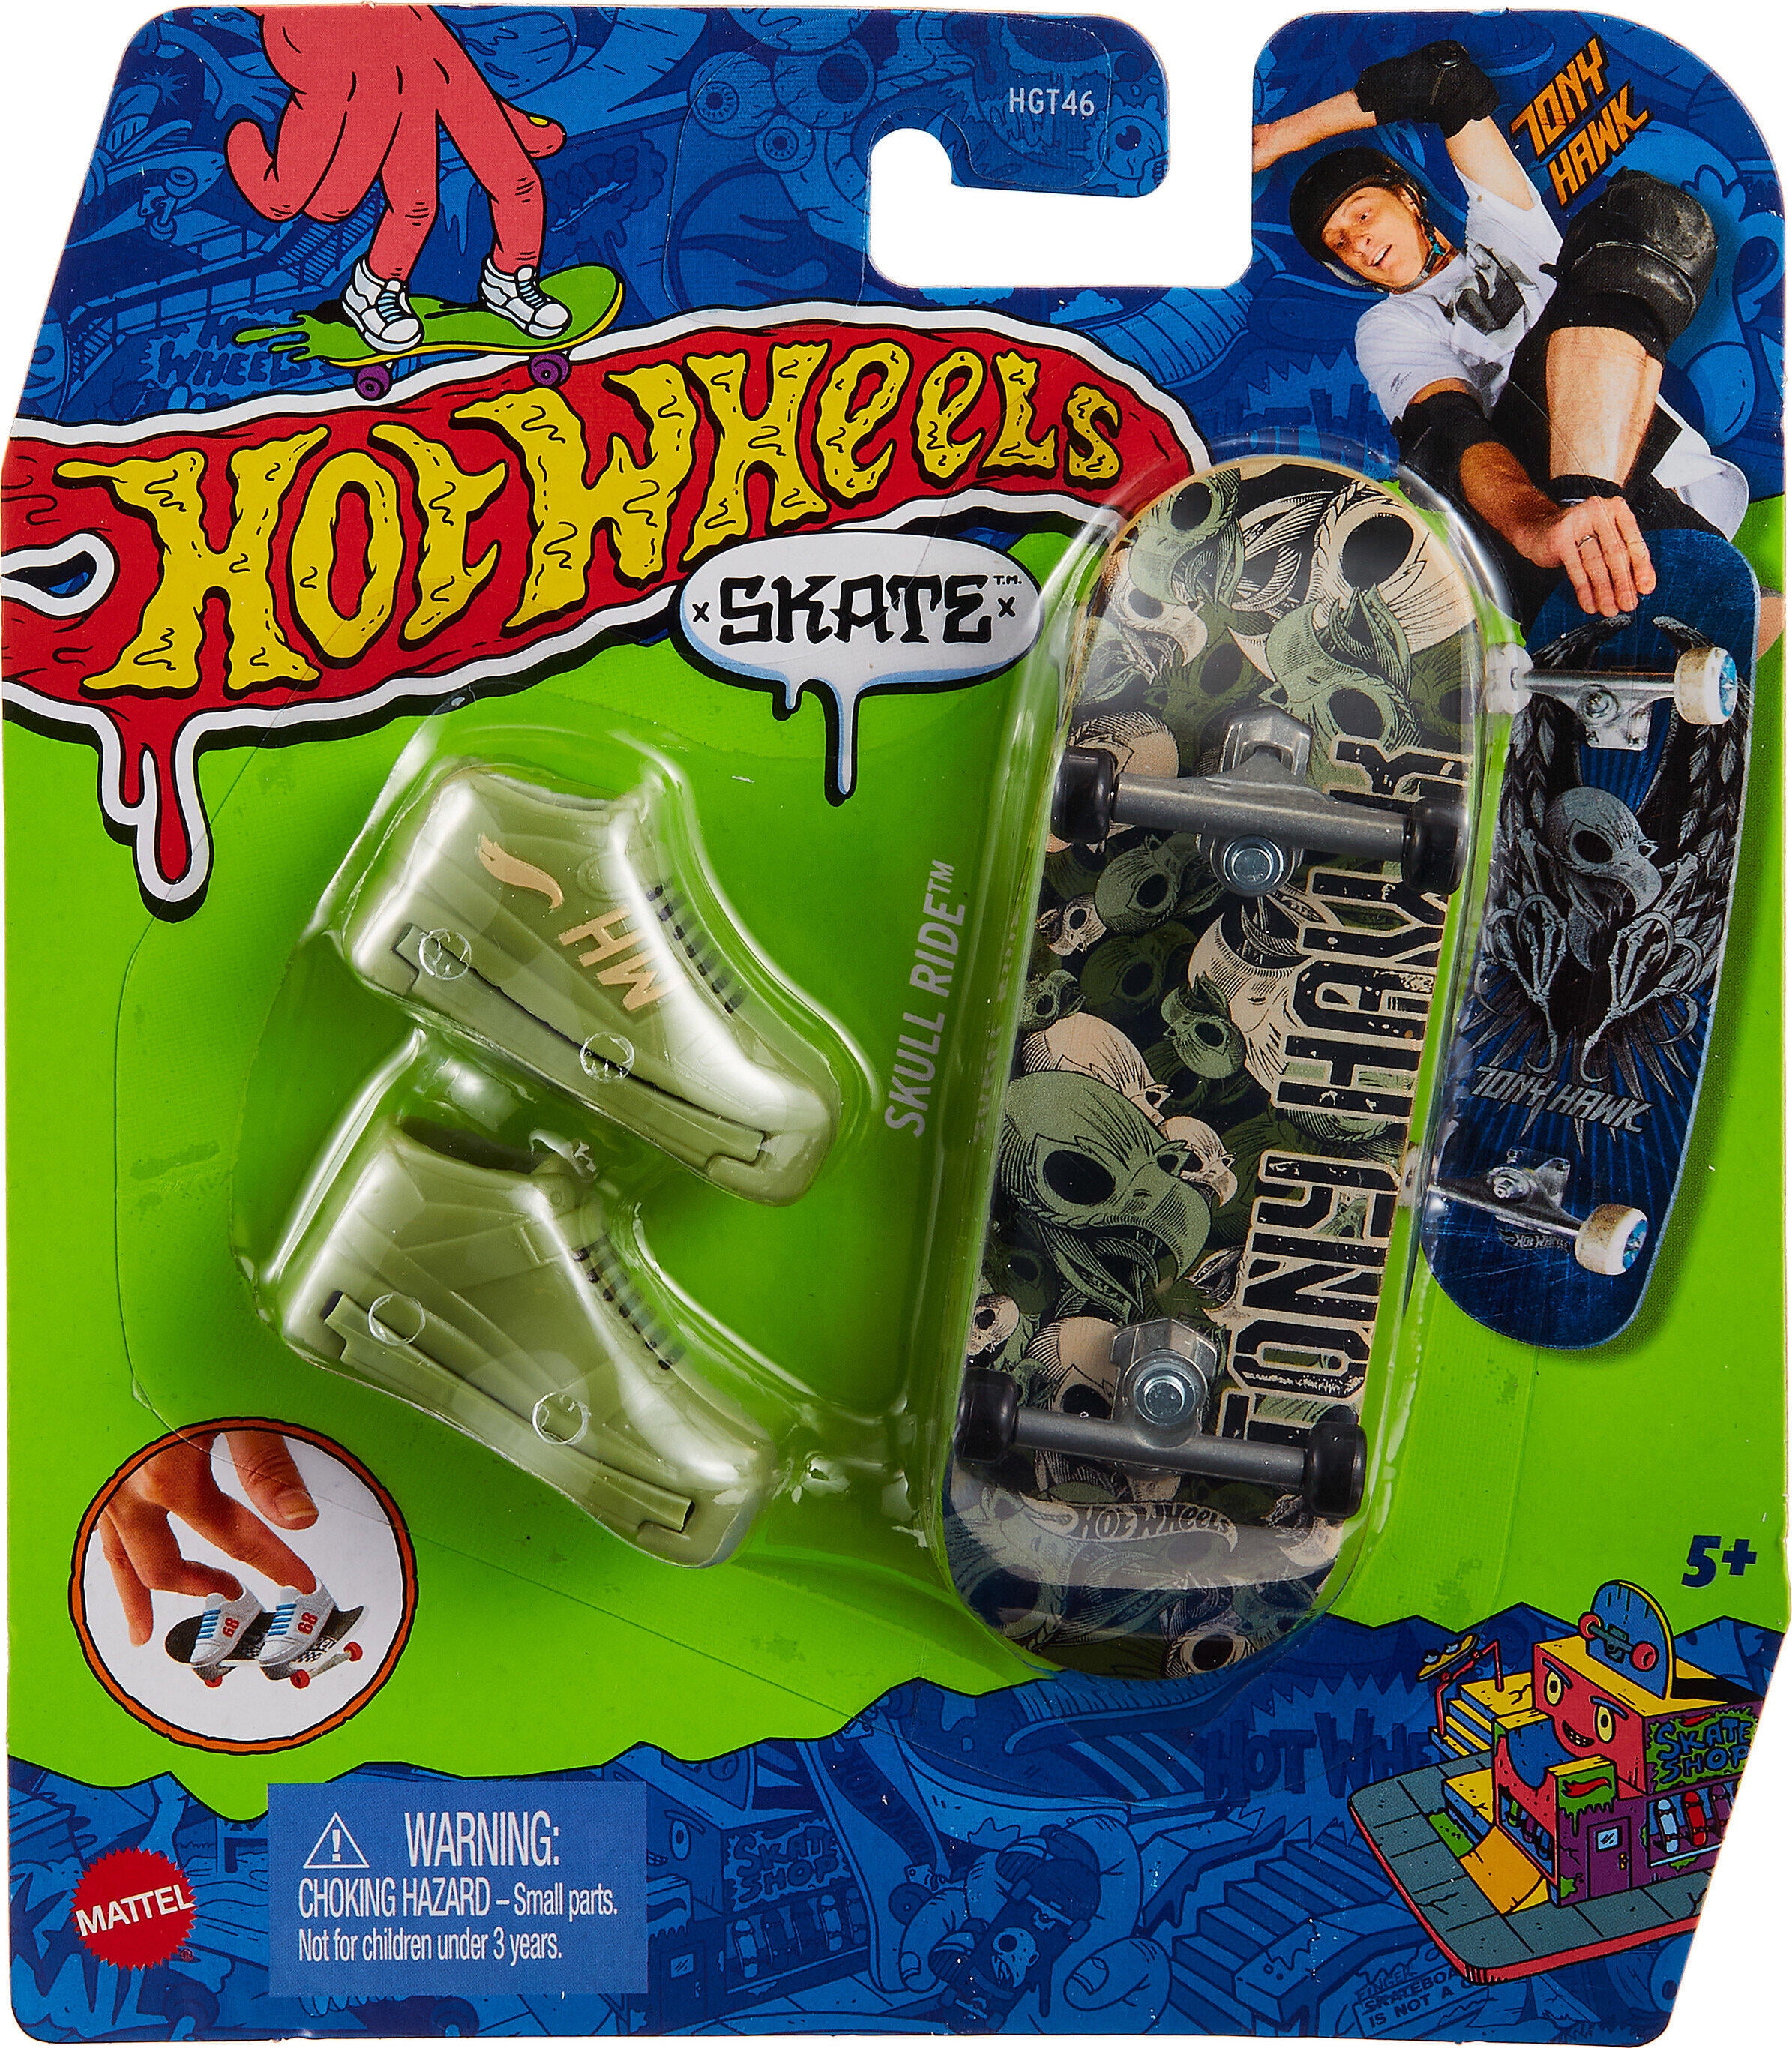 Mini Pack Finger Skateboards Cool Toys Kit Deck Skateboards Toy